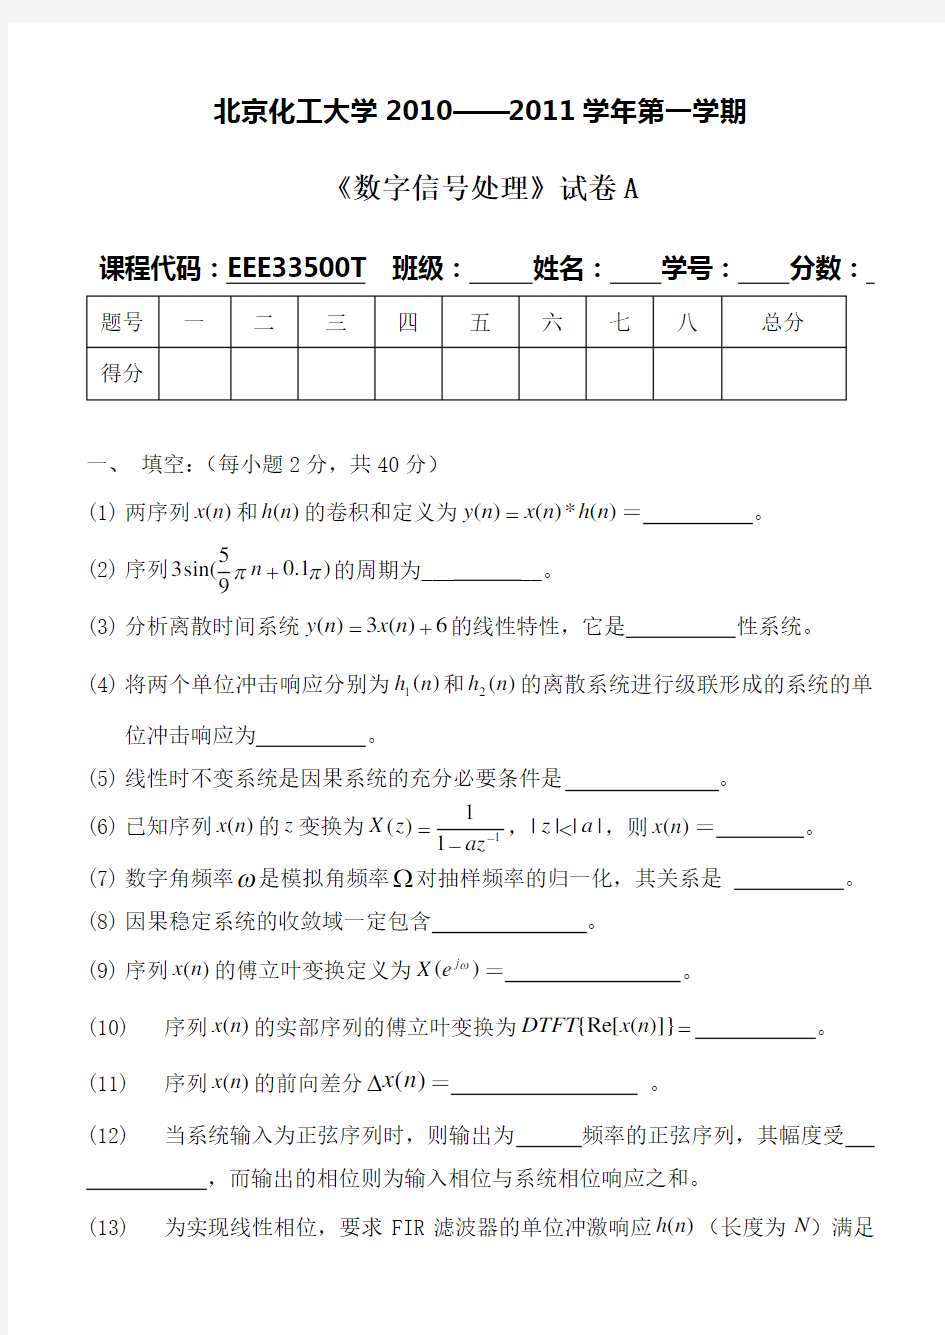 北京化工大学2010-2011《数字信号处理》期末考试